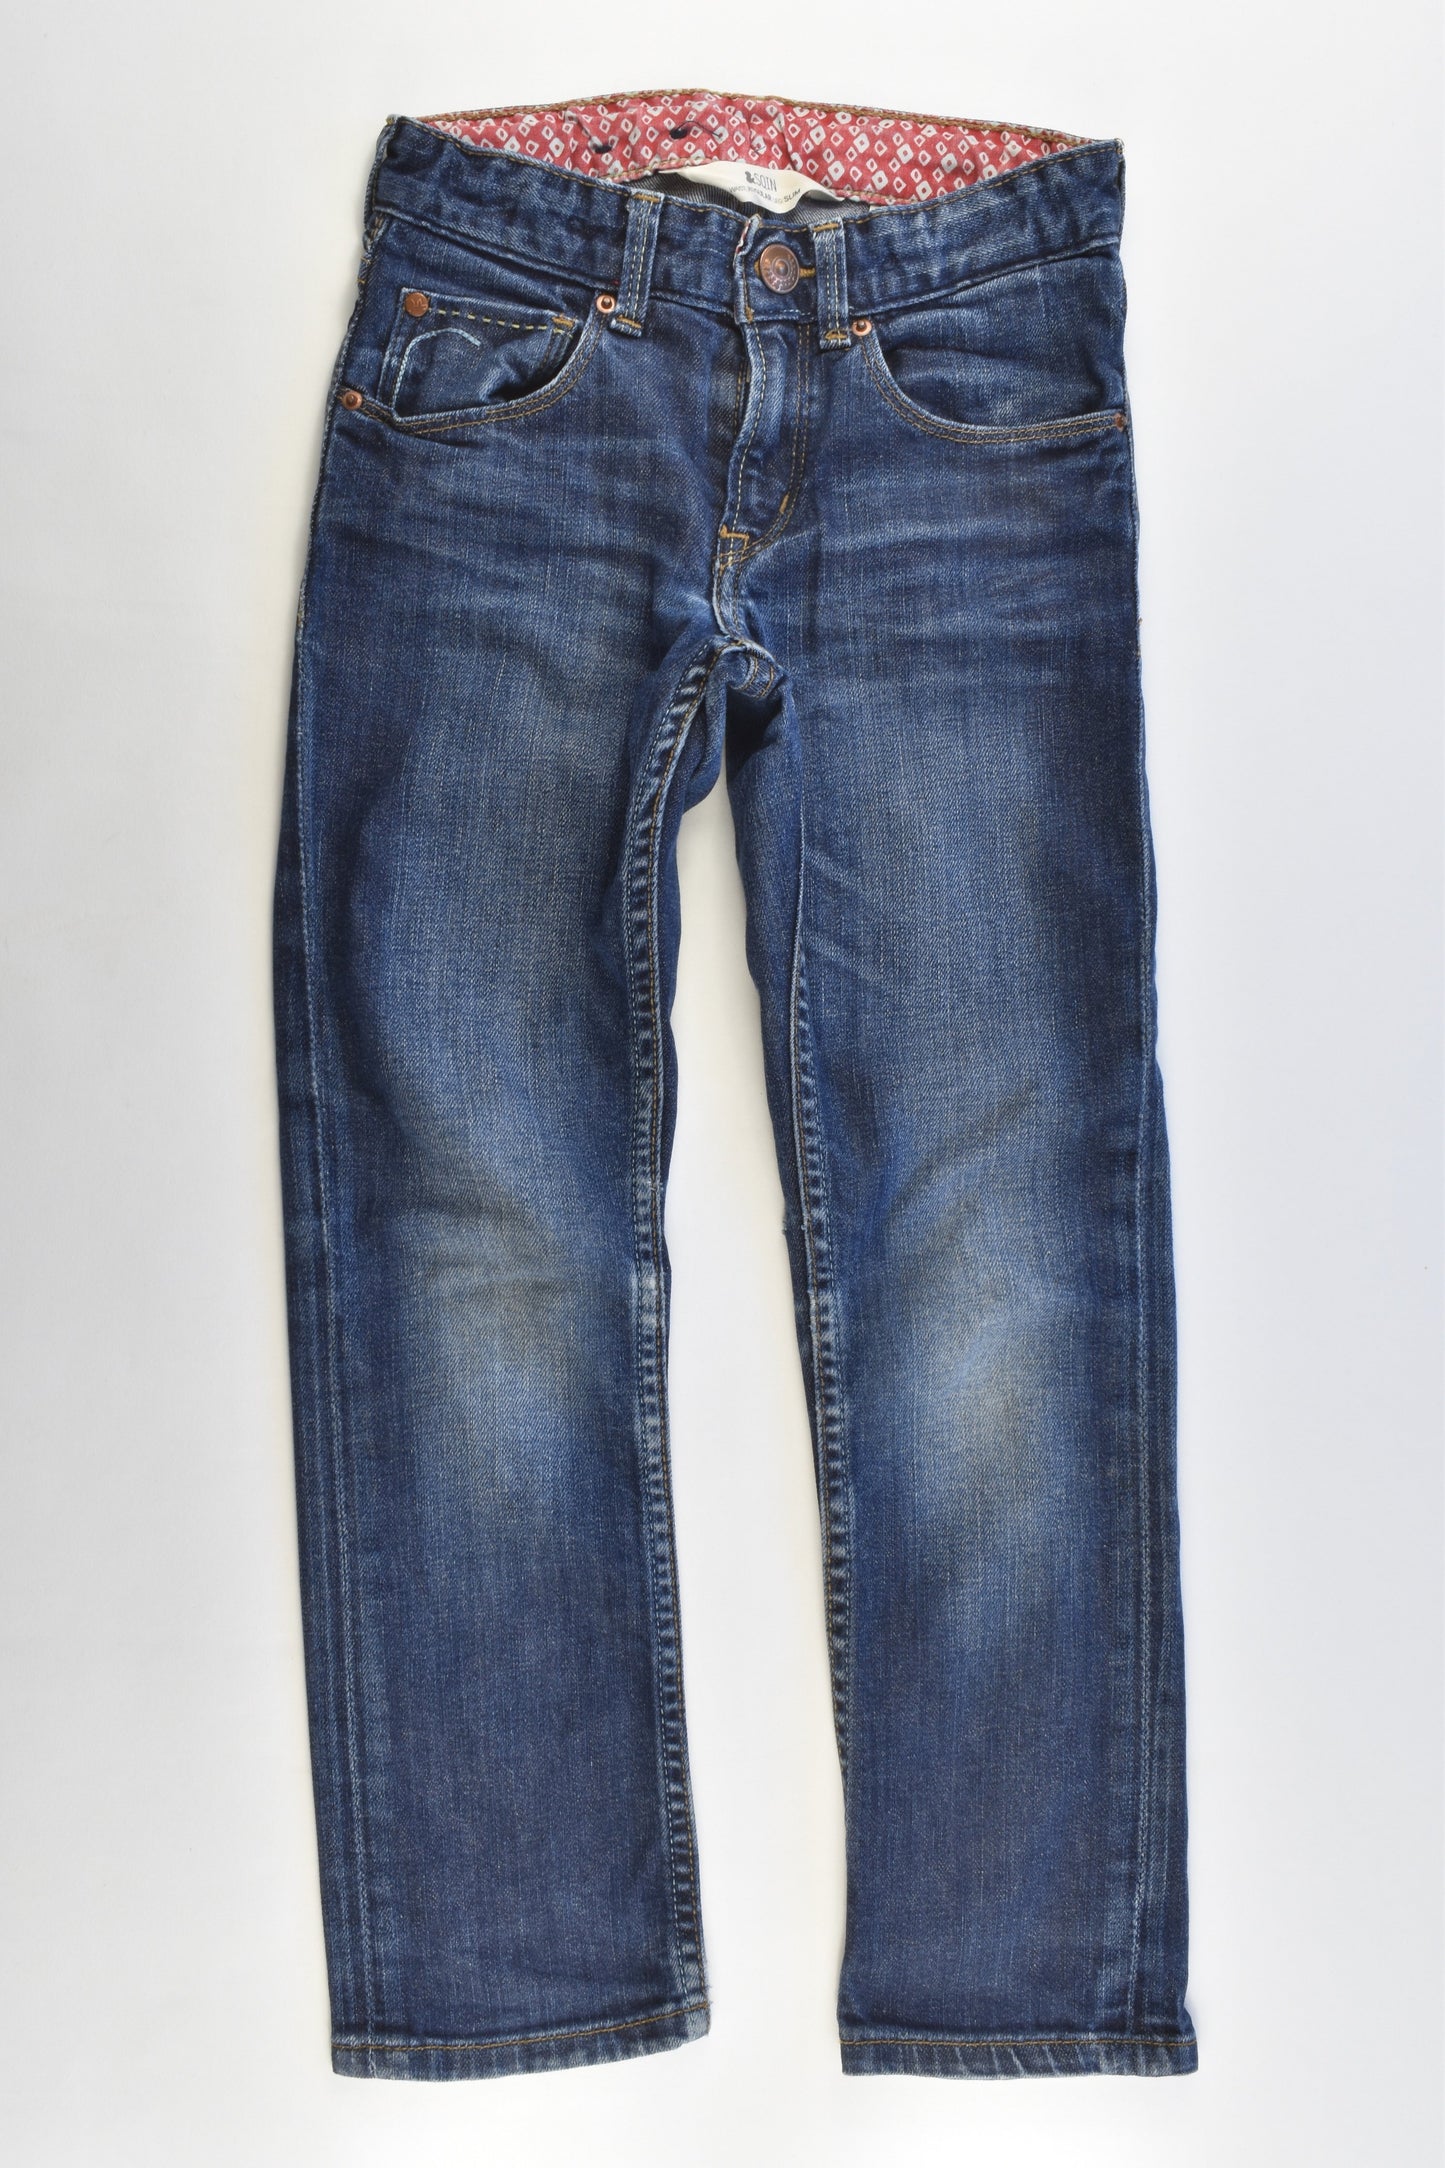 H&M Size 5-6 (116 cm) Stretchy Regular Waist, Slim Leg Denim Pants